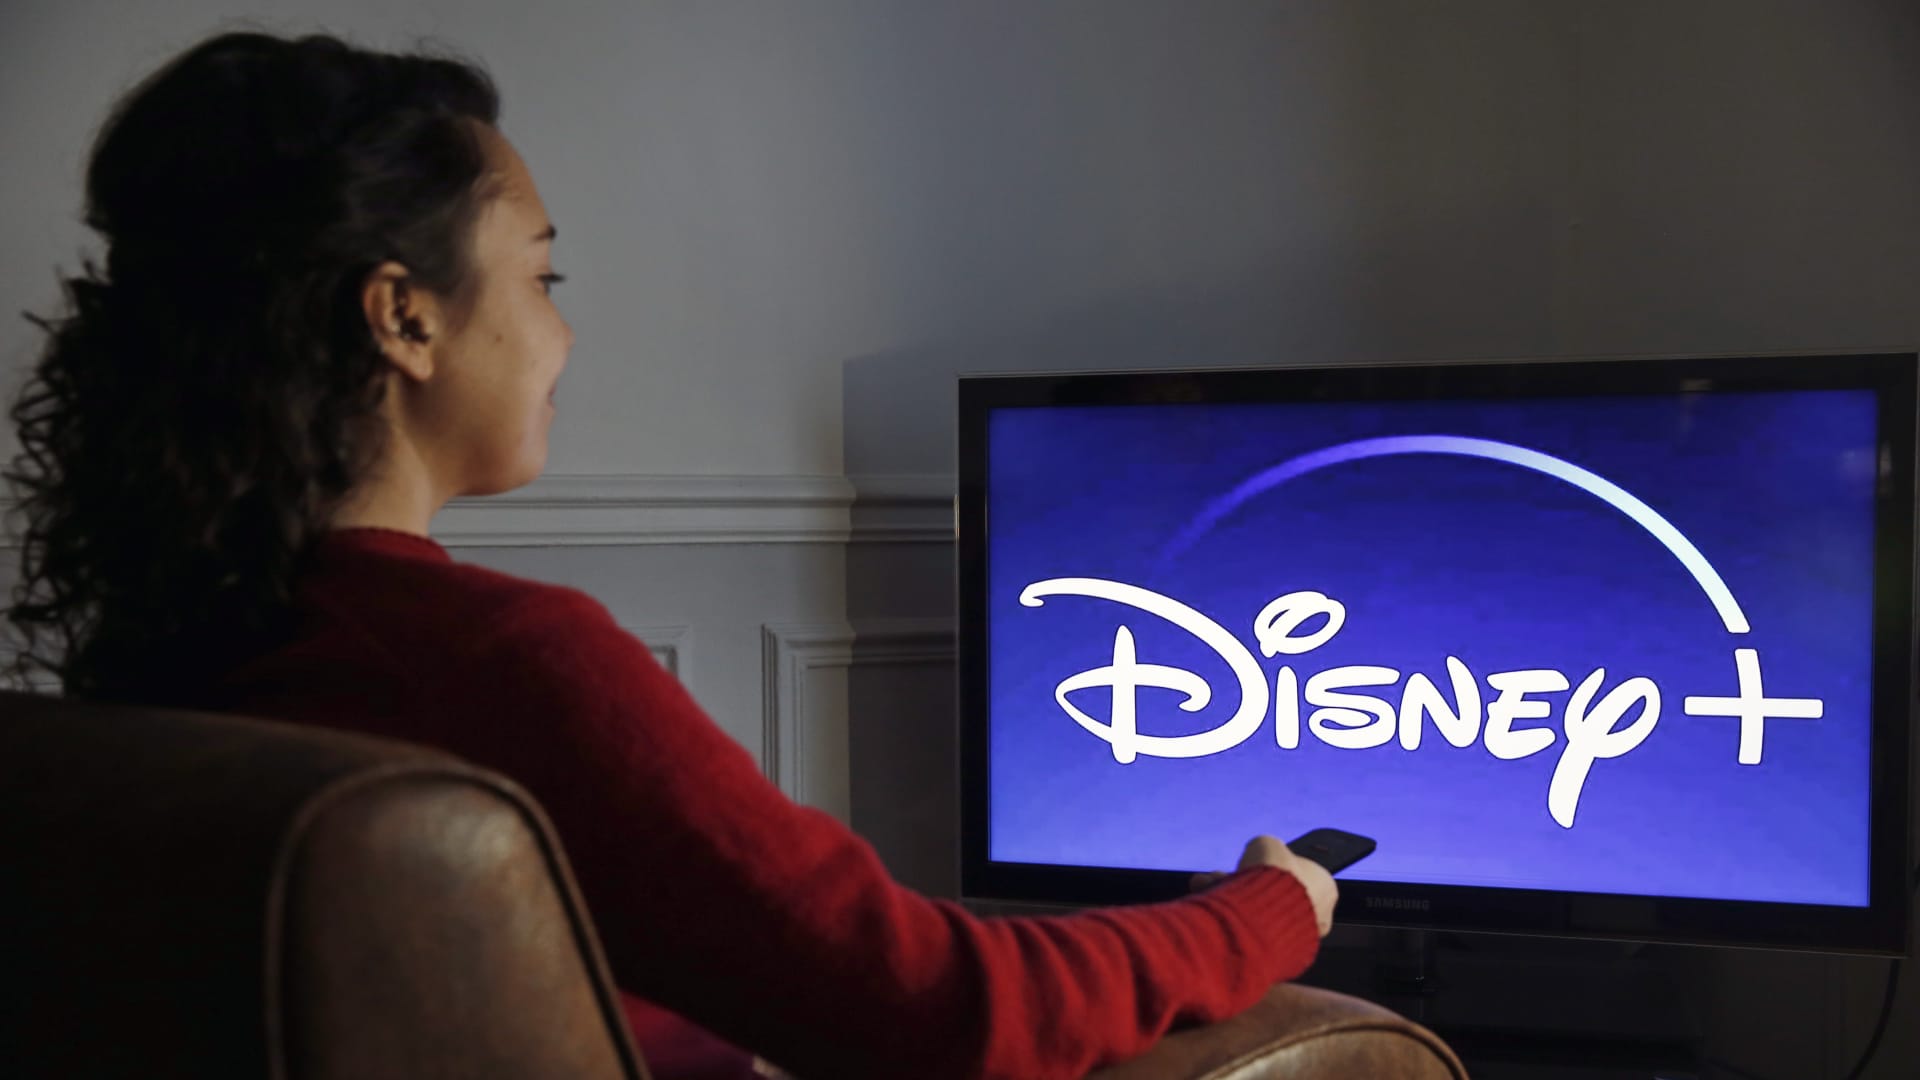 Disney to raise Disney+ price for ad-free plan